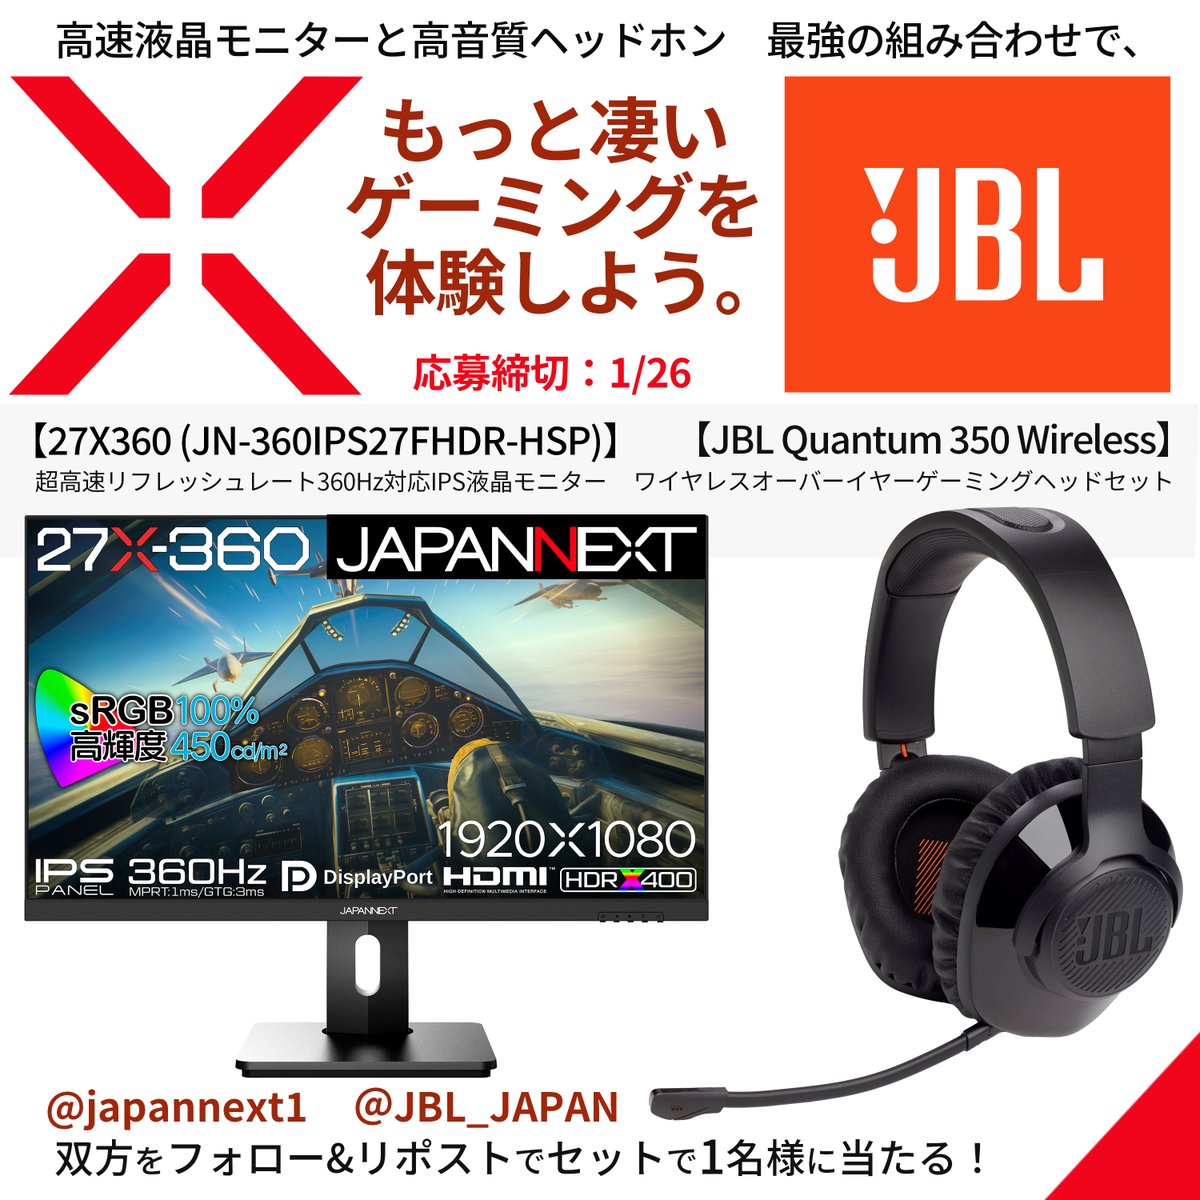 ／🎍🌅 JAPANNEXTからのBIGなお年玉✨ JBL JAPAN様とのスペシャルコラボキャンペーン第2弾を開催します！ ＼🎍🌅 第2弾：【ゲーミングセット】😆💫 🖥️JAPANNEXTのゲーミングモニター「27X-360 」と、 🎧JBL JAPAN（@JBL_JAPAN）様のワイヤレスオーバーイヤーゲーミングヘッドセット「JBL Quantum